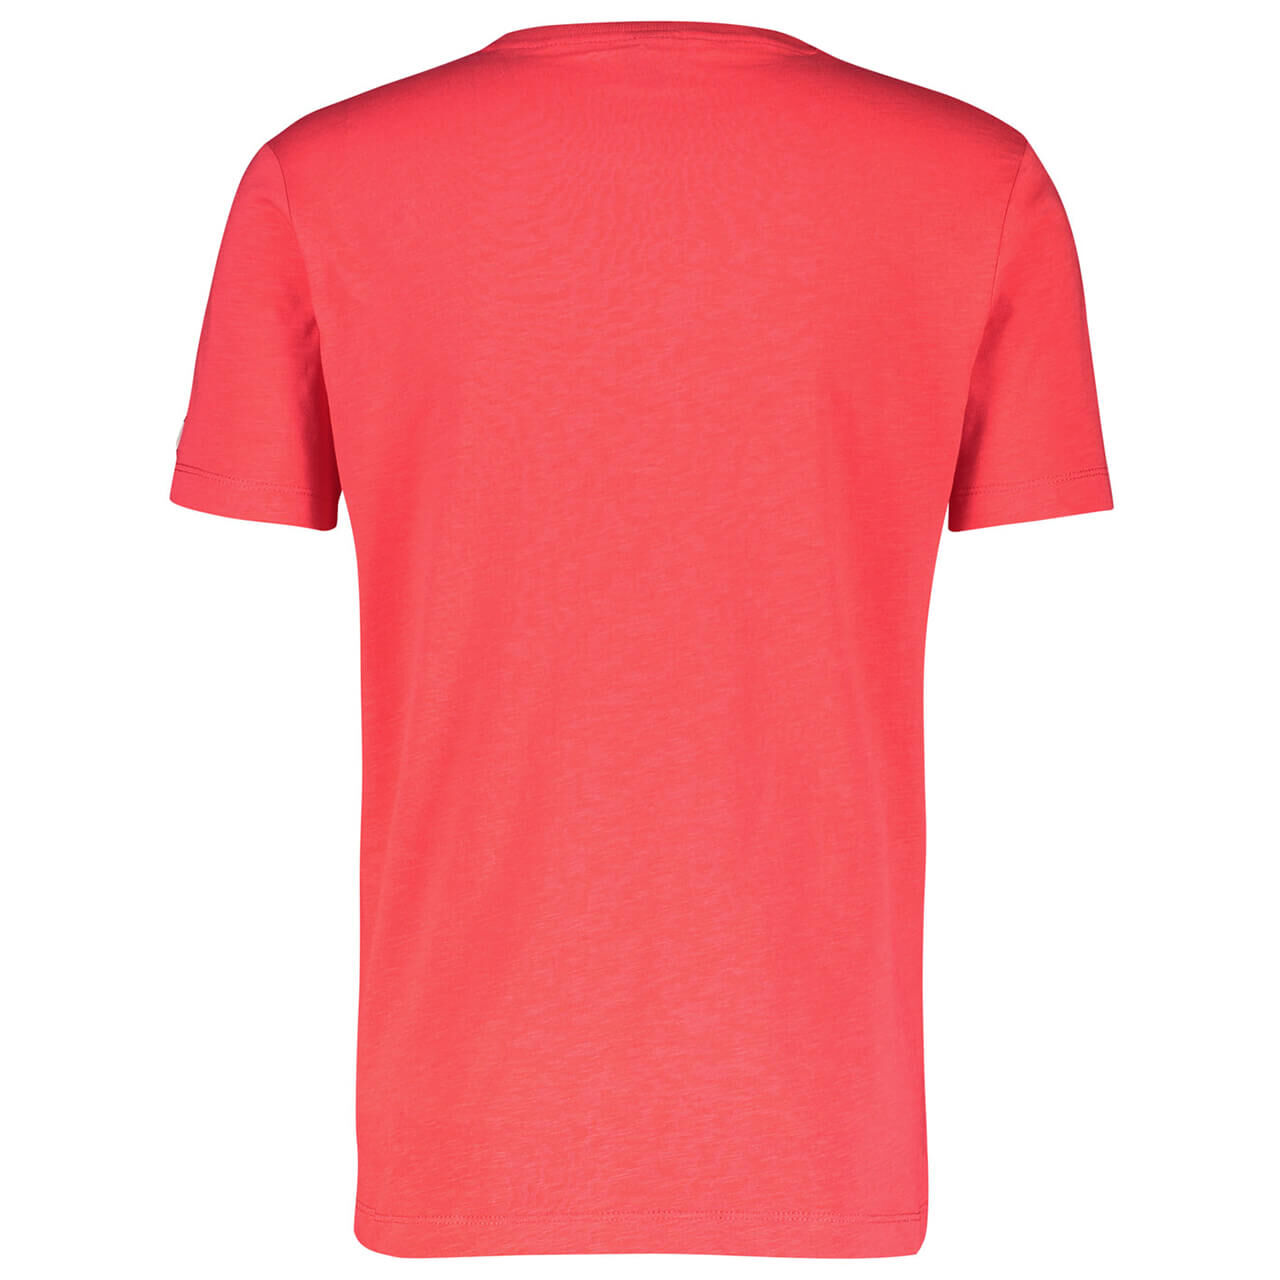 Lerros T-Shirt für Herren in Rot mit Print, FarbNr.: 333